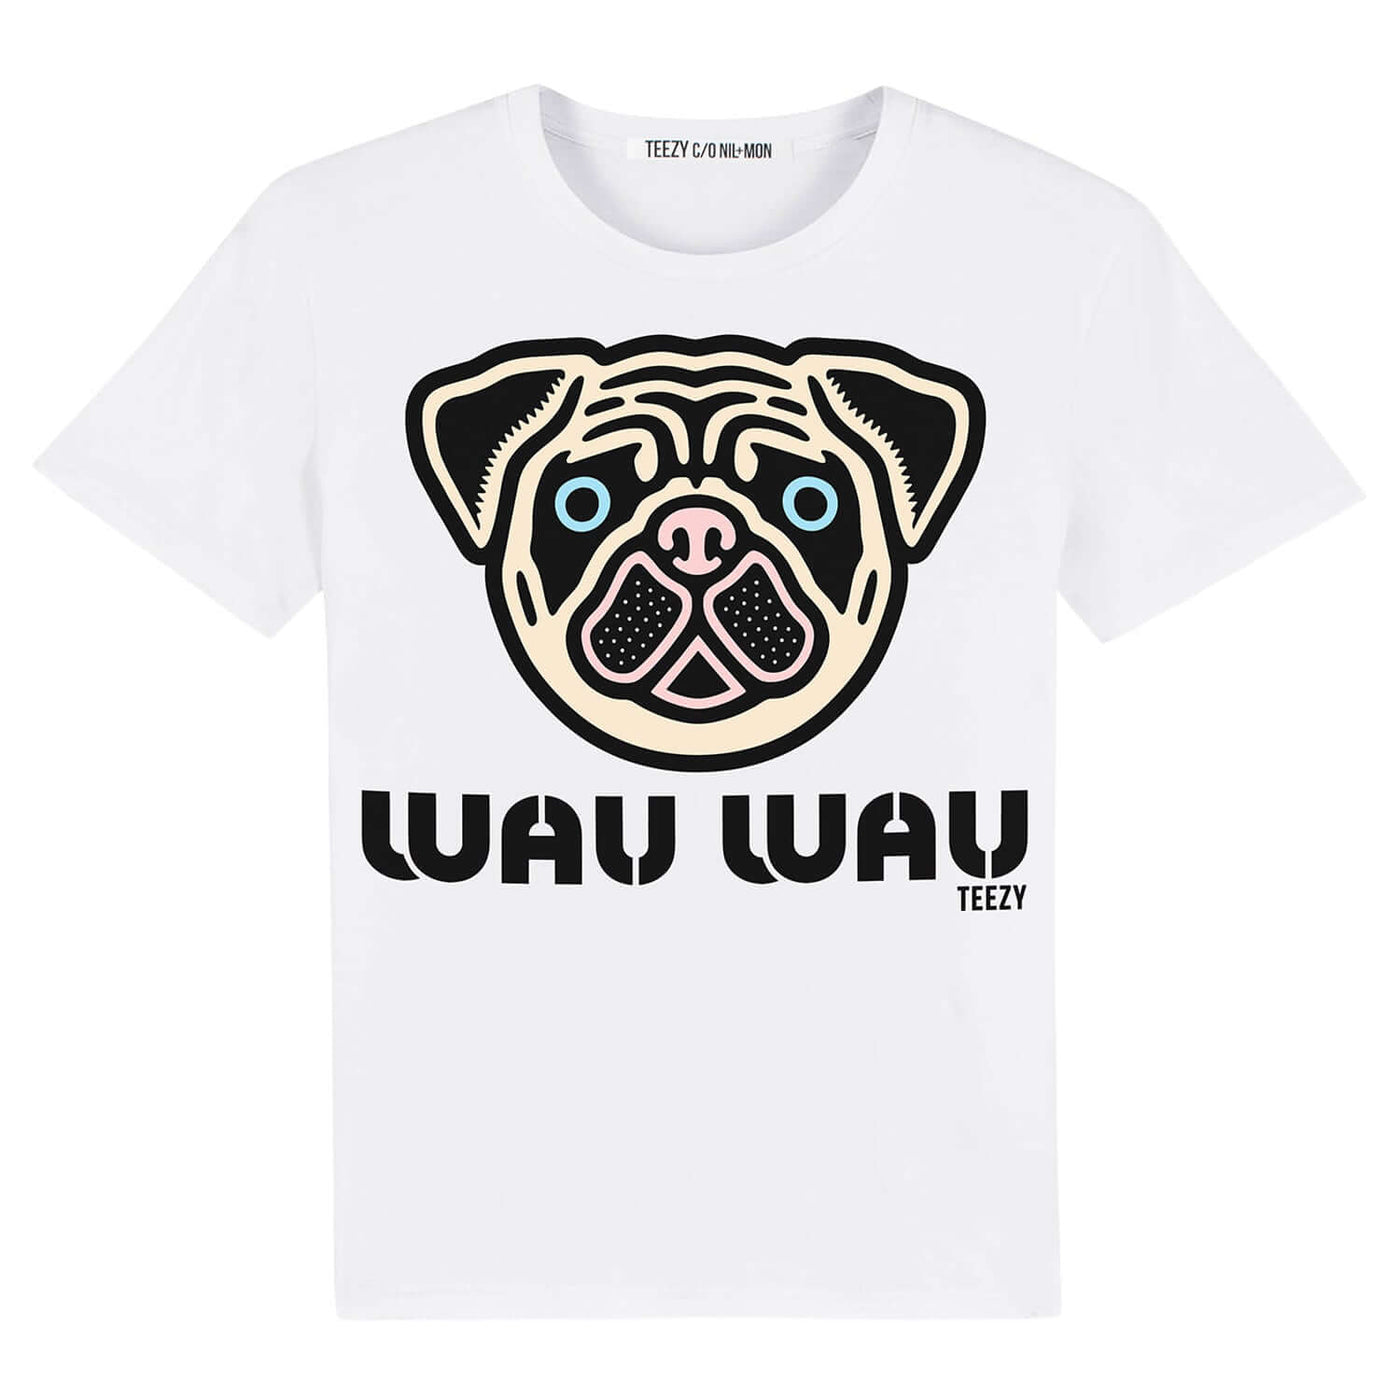 T-Shirt "TZ Wau Wau" - white